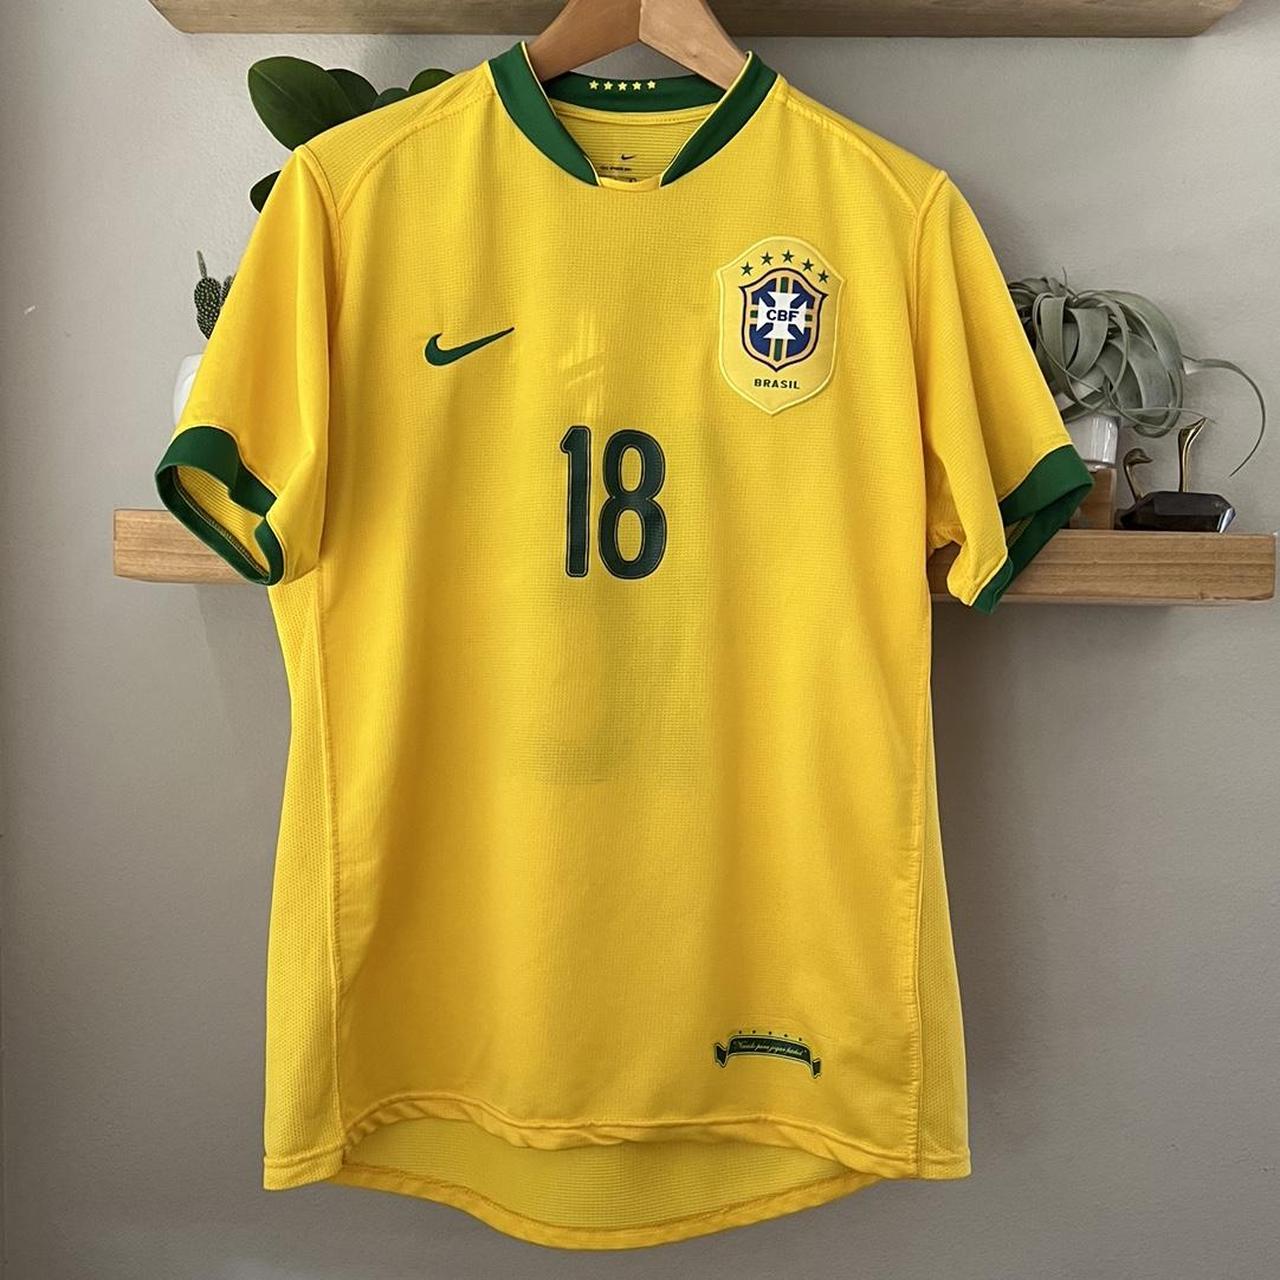 Soccer jersey vintage rare Brazil size... - Depop